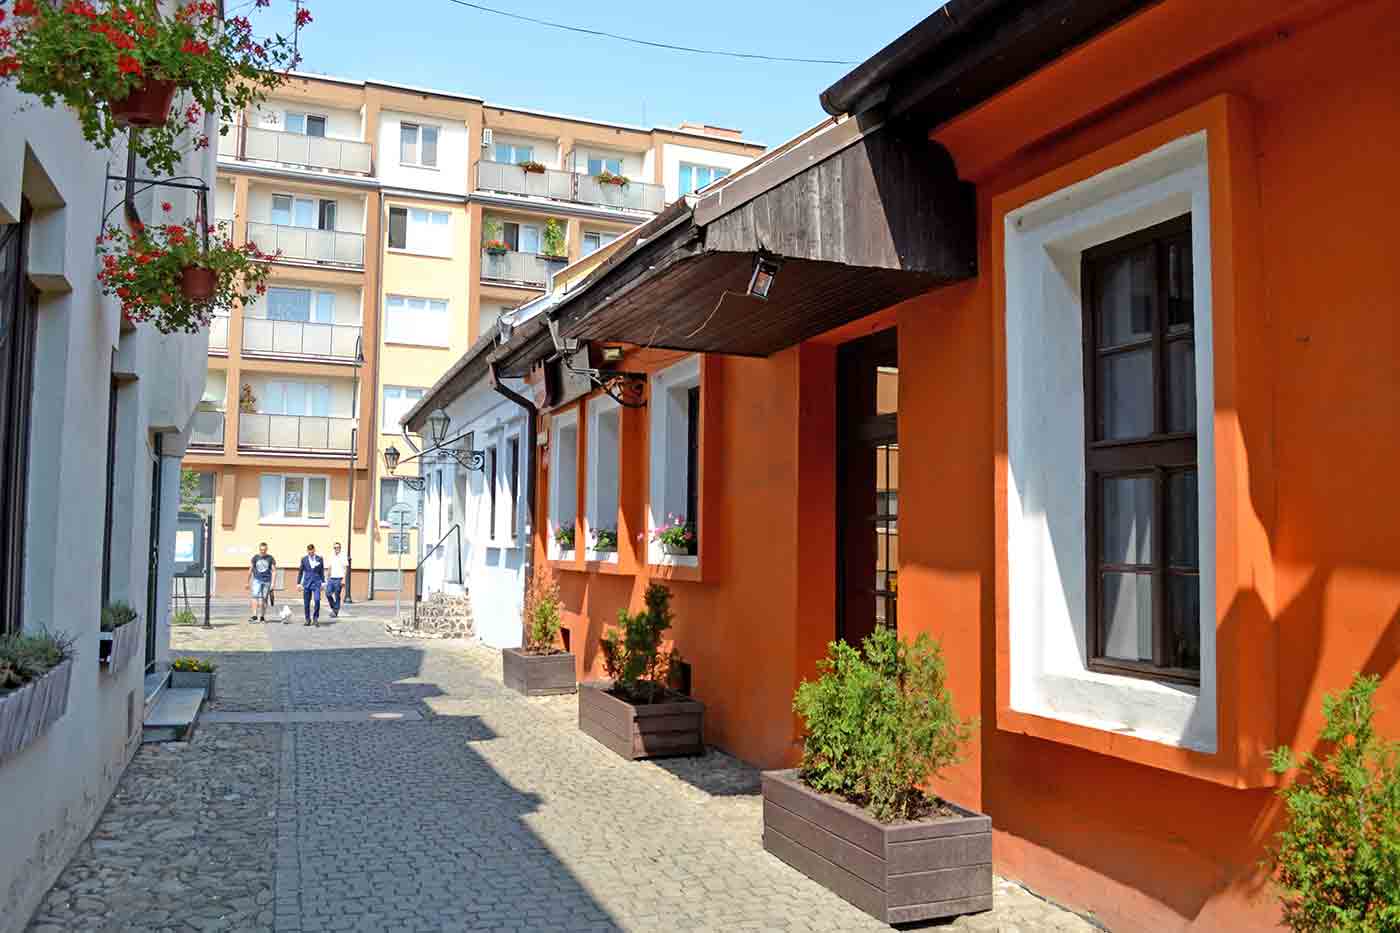 Hrnciarska Street